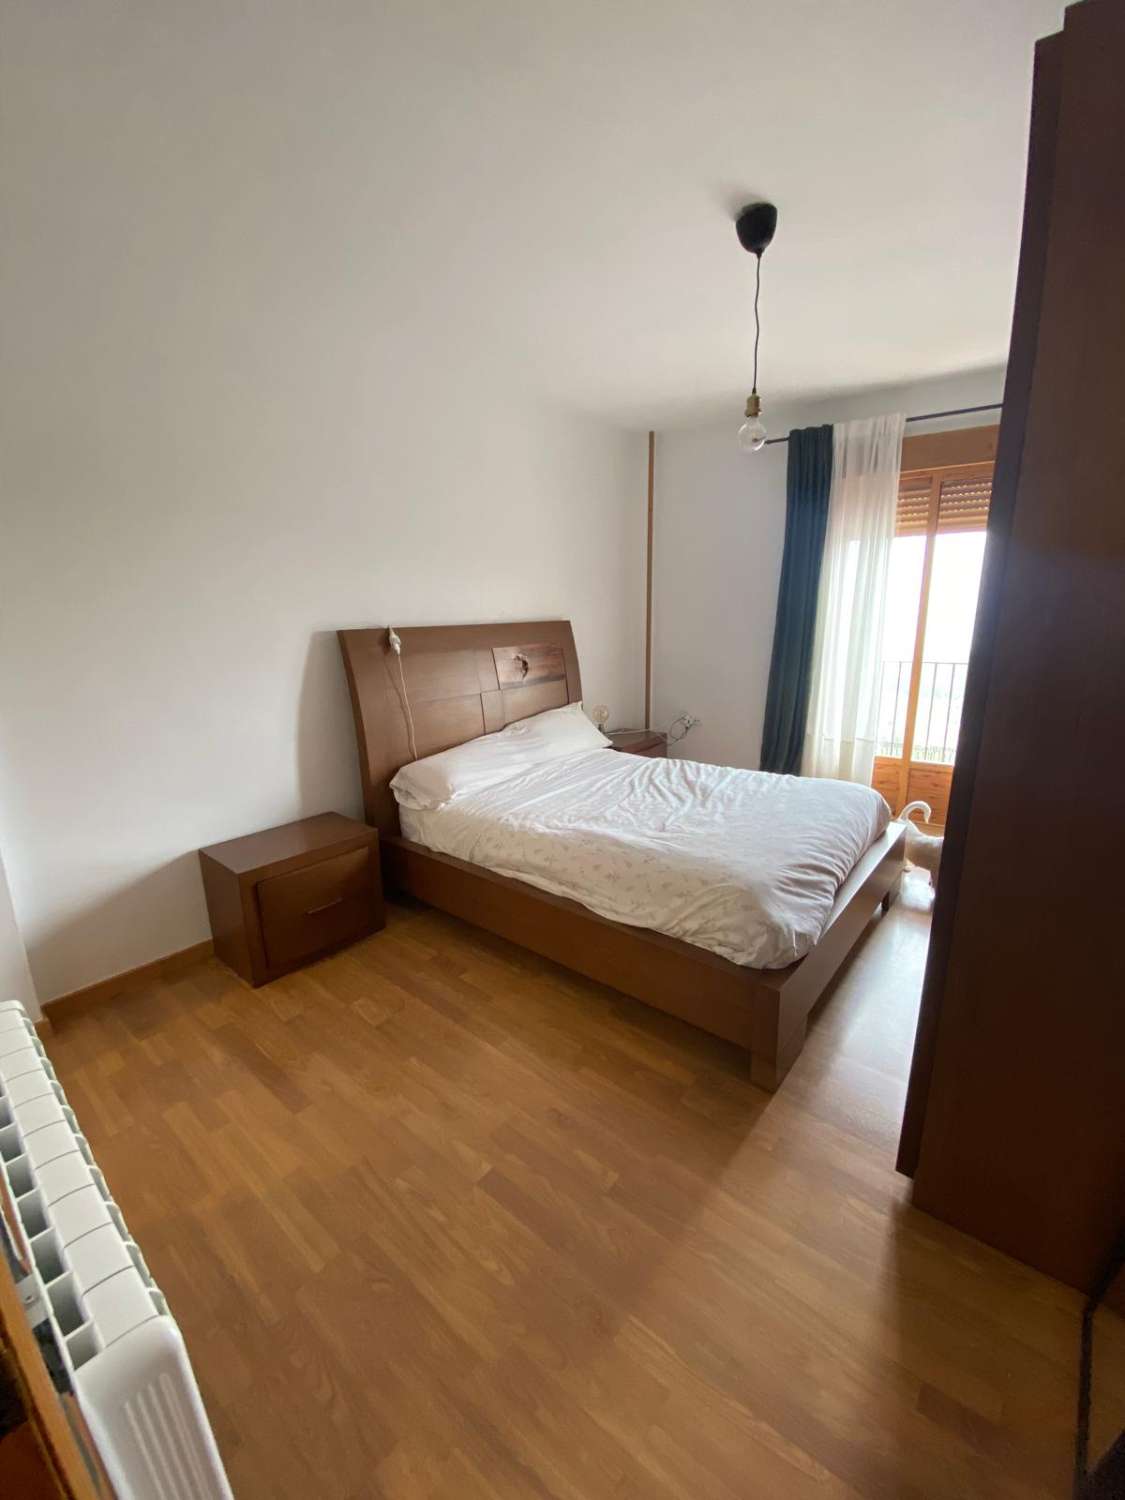 95m2 commercial premises - shop/office & 3 bed, 2 bath apartment prime area of Velez Blanco